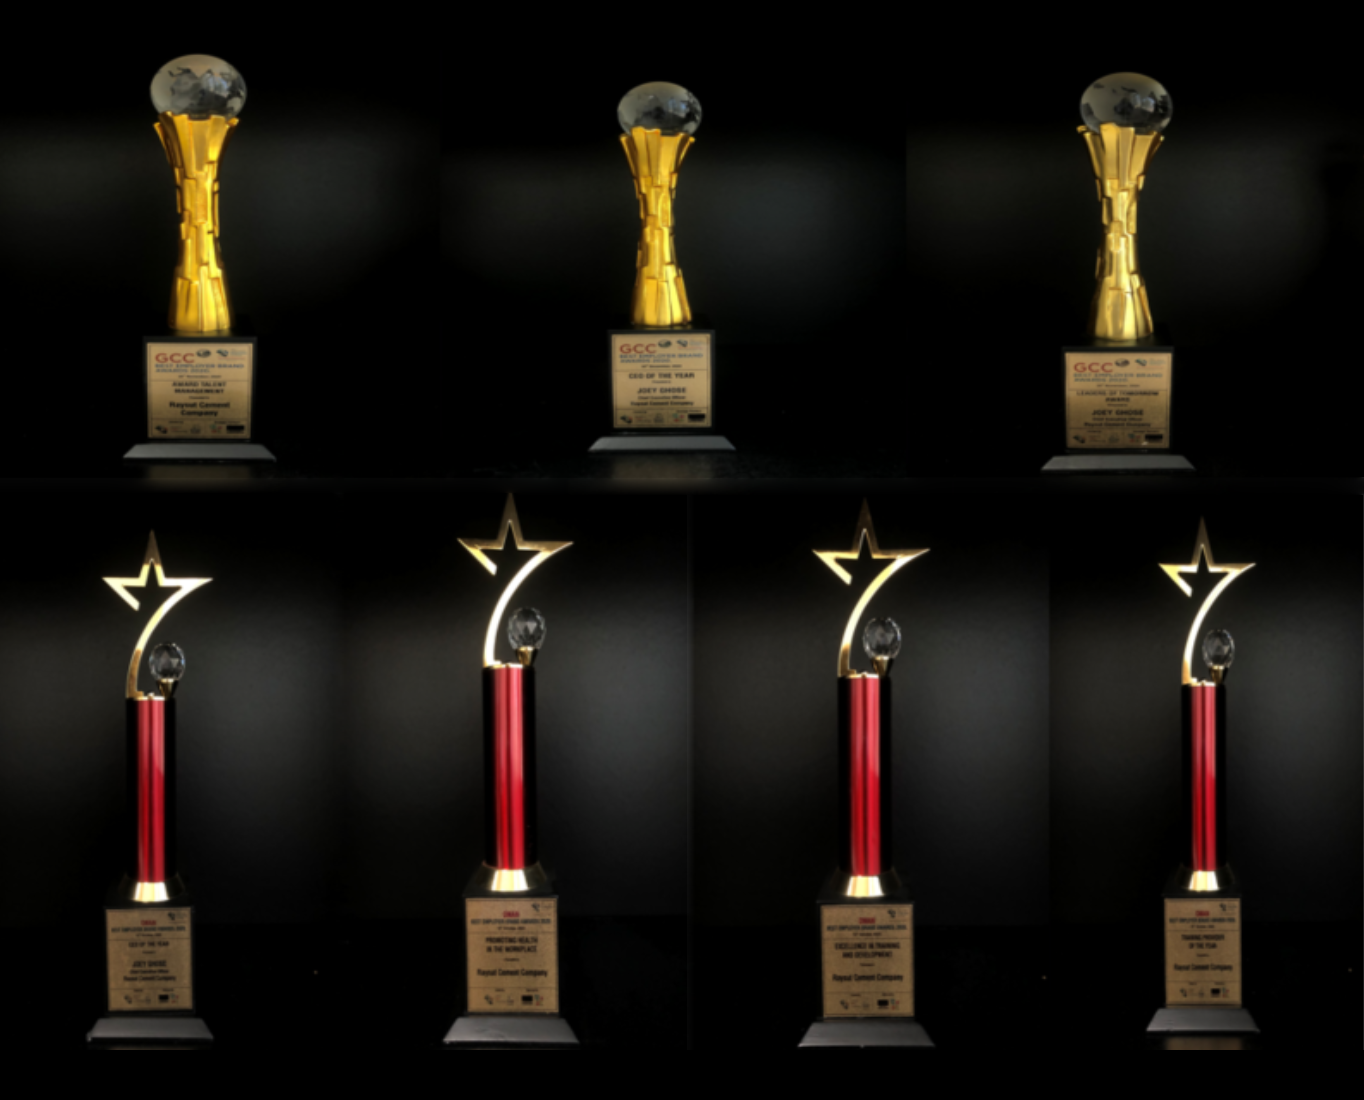 ريسوت للأسمنت تفوز بجوائز أفضل العلامات التجارية في سلطنة عمان ودول مجلس التعاون الخليجي لعام 2020